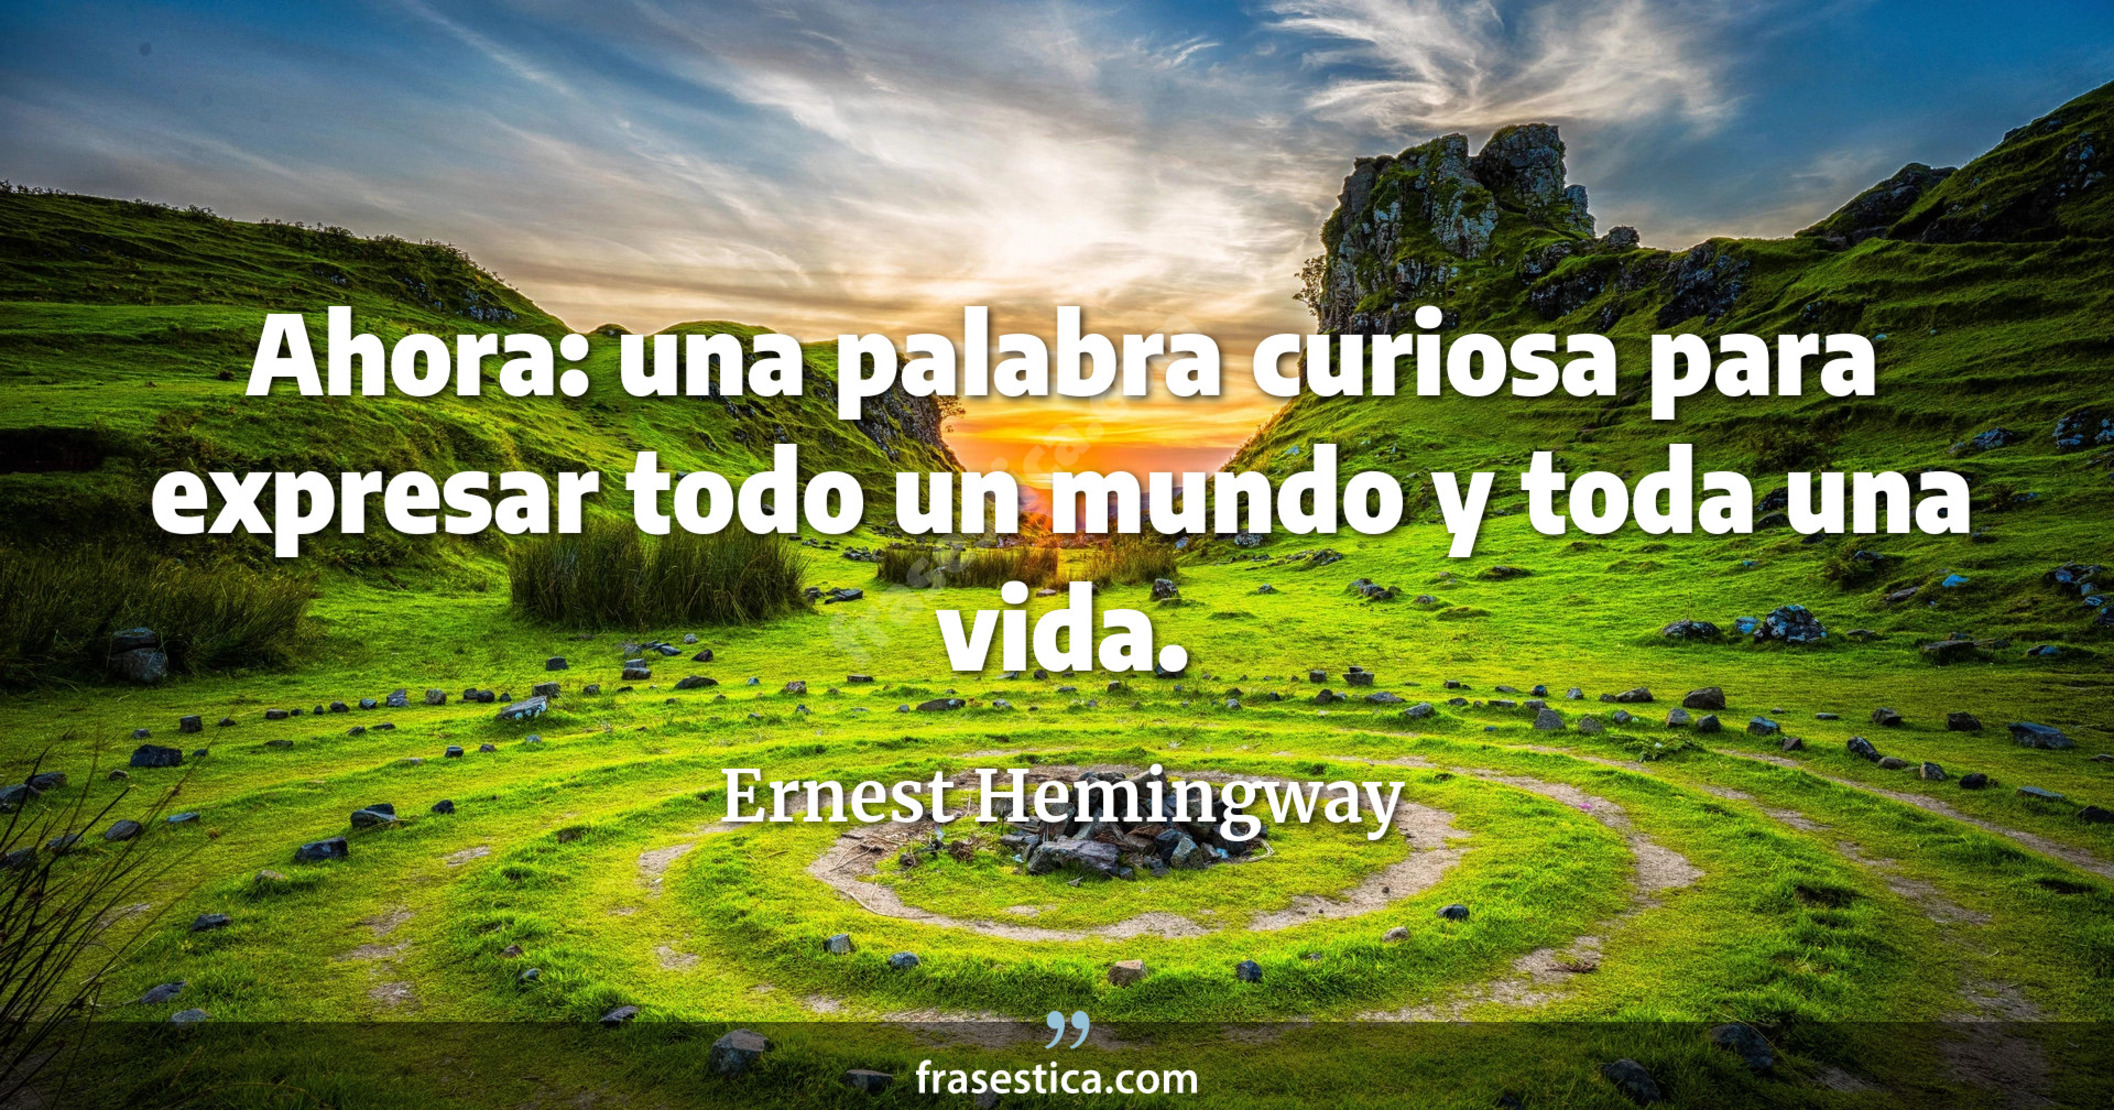 Ahora: una palabra curiosa para expresar todo un mundo y toda una vida. - Ernest Hemingway